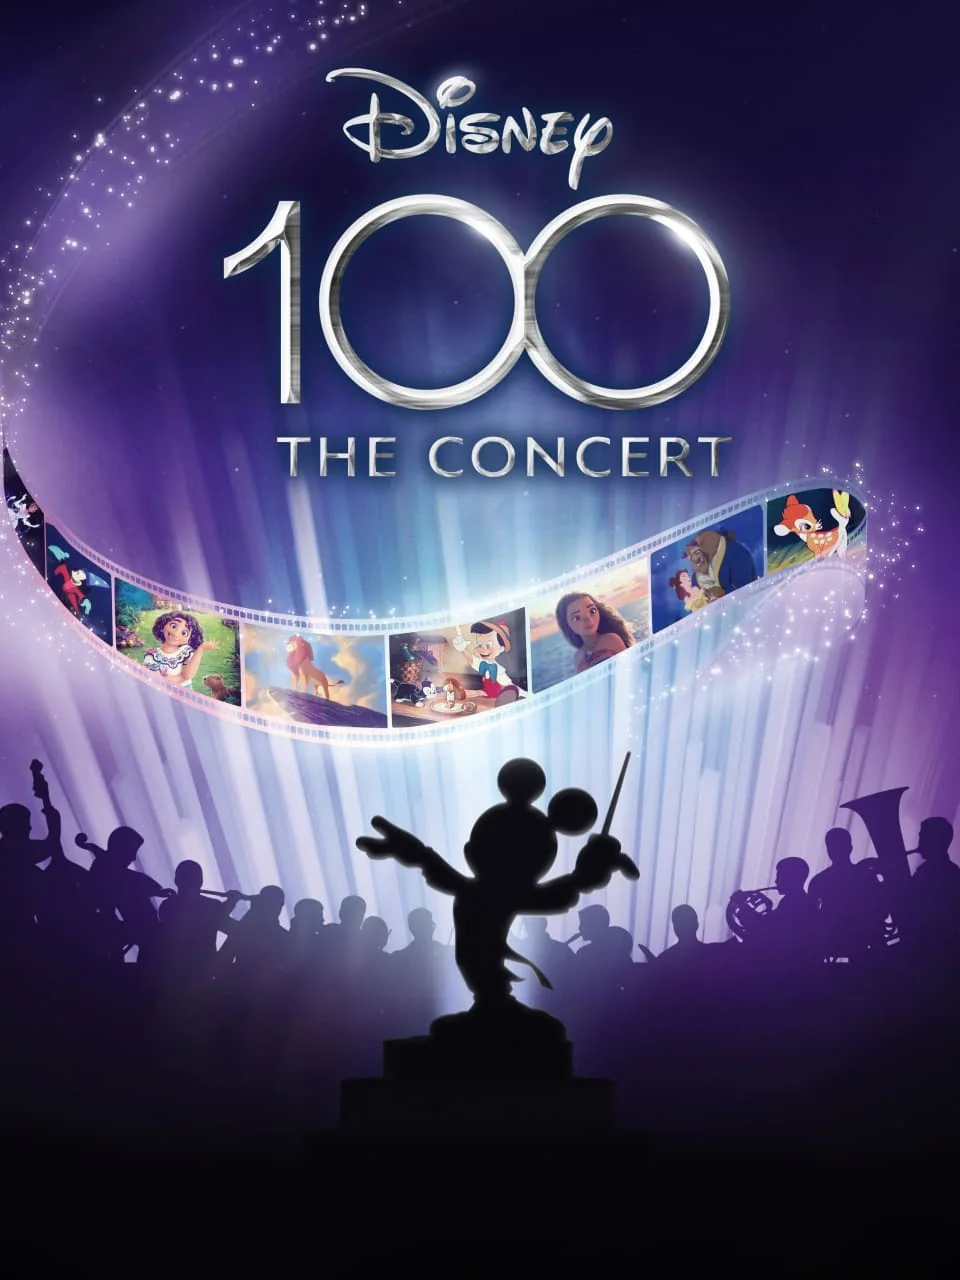 Disney100 in Concert 1